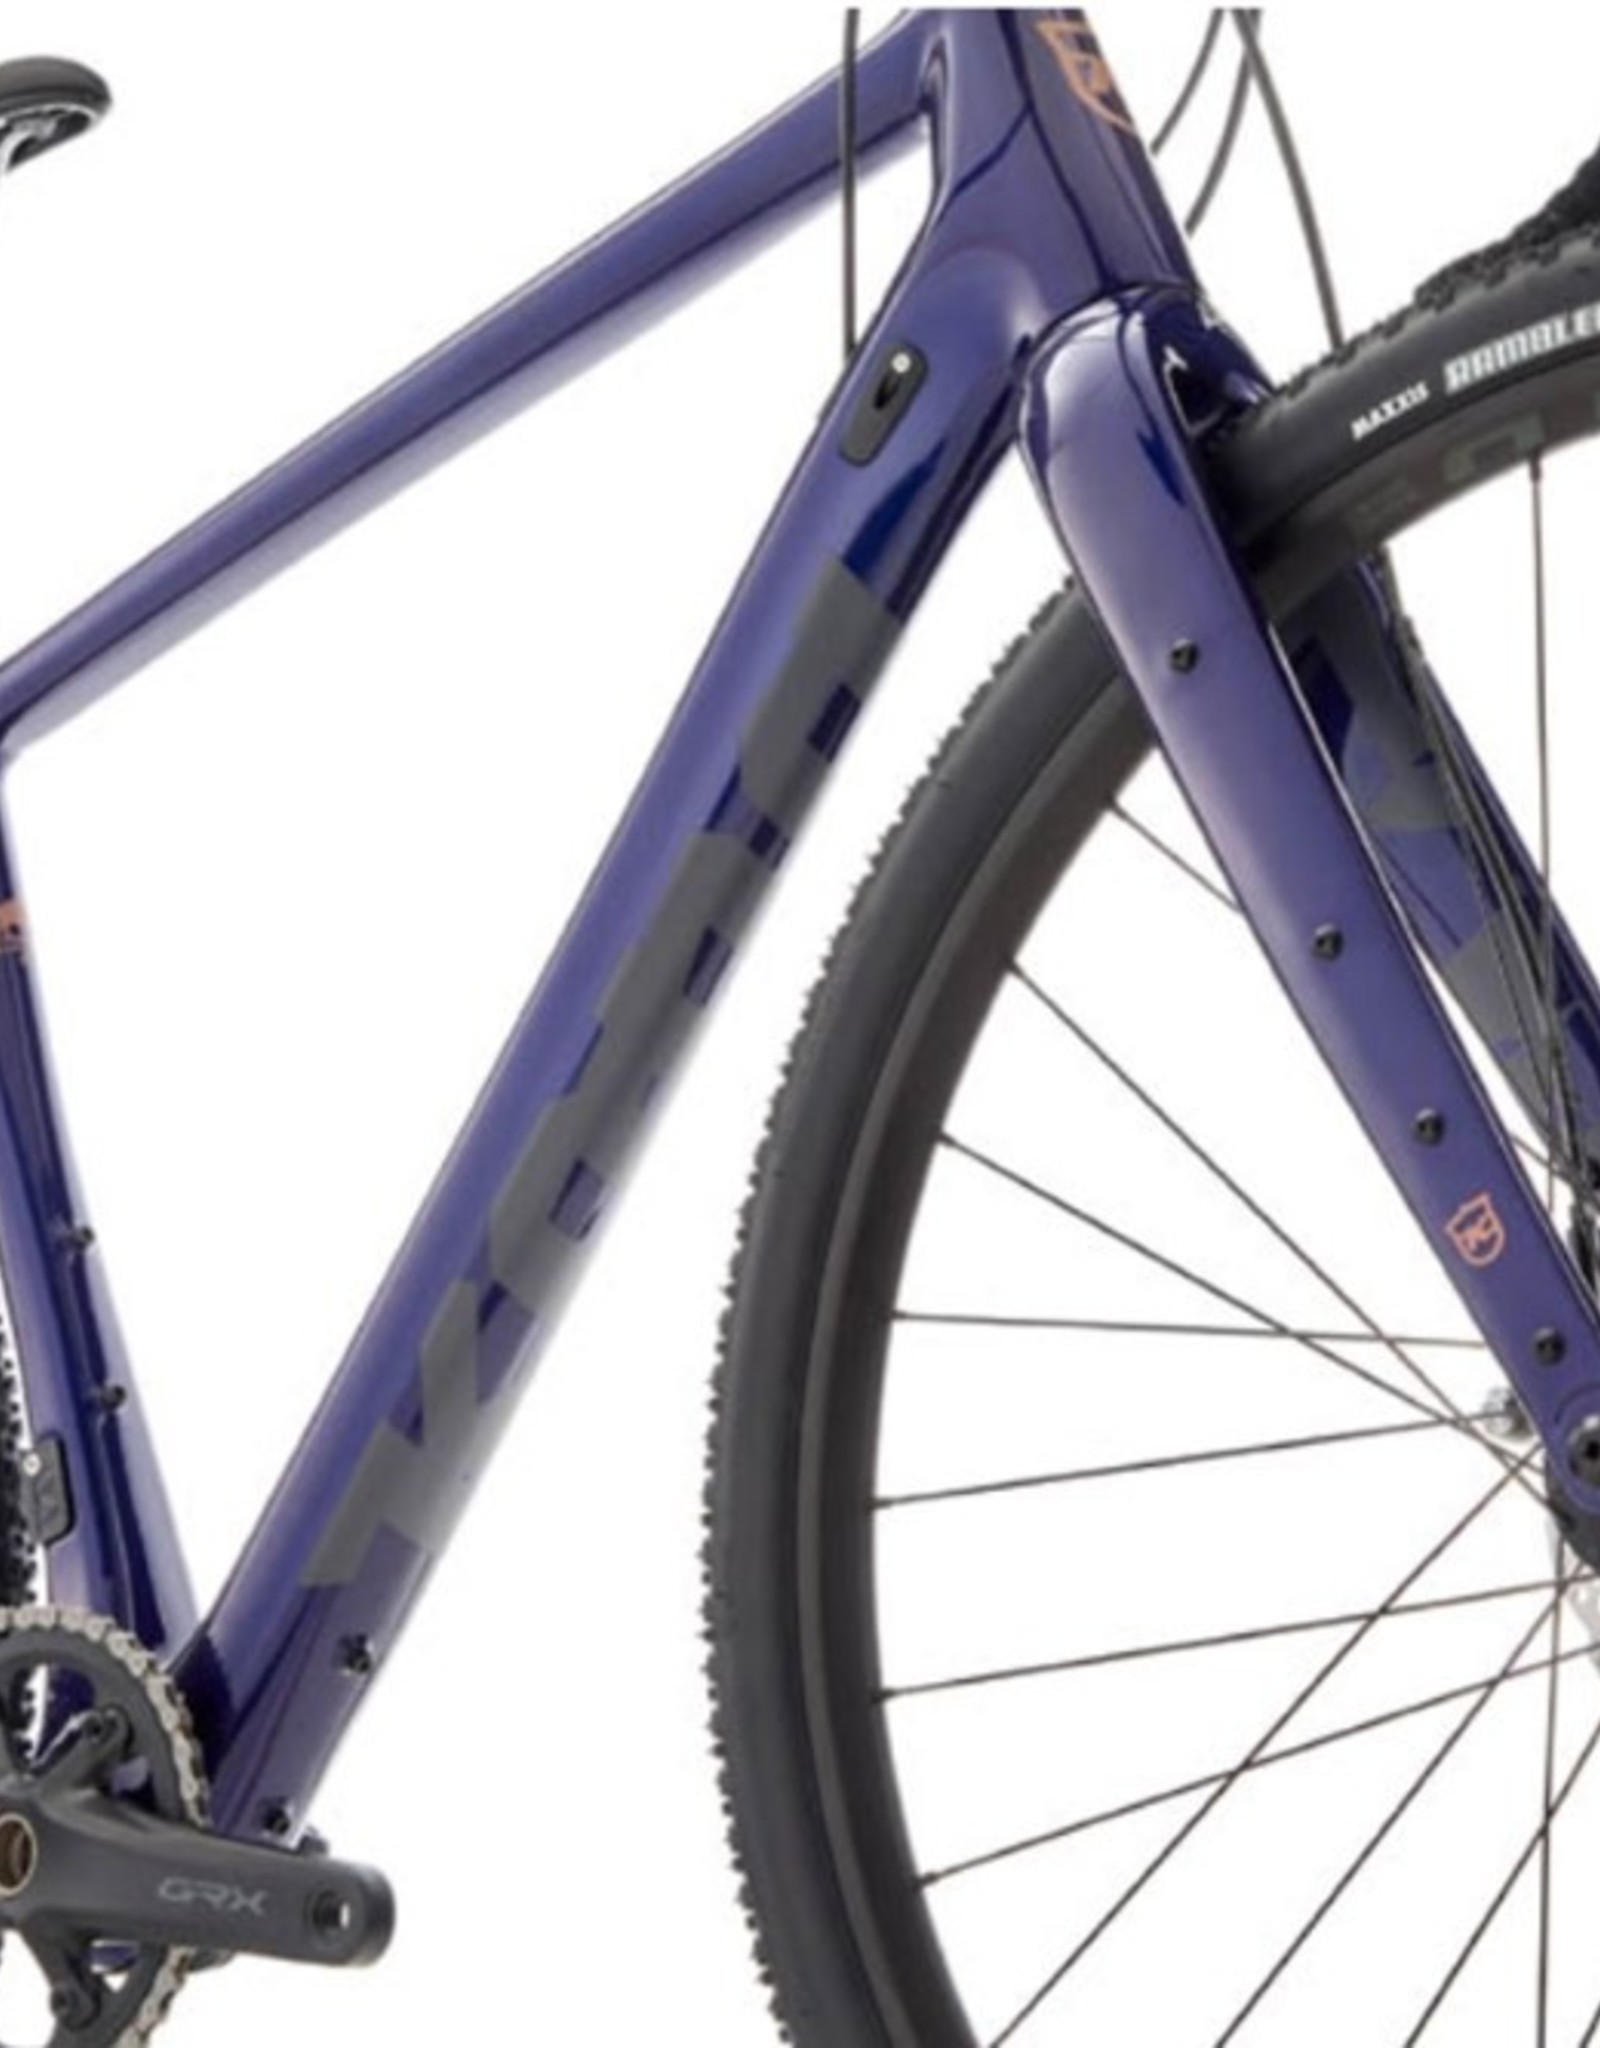 Kona Bicycles Kona Libre CR DL (Indigo Blue) 2022